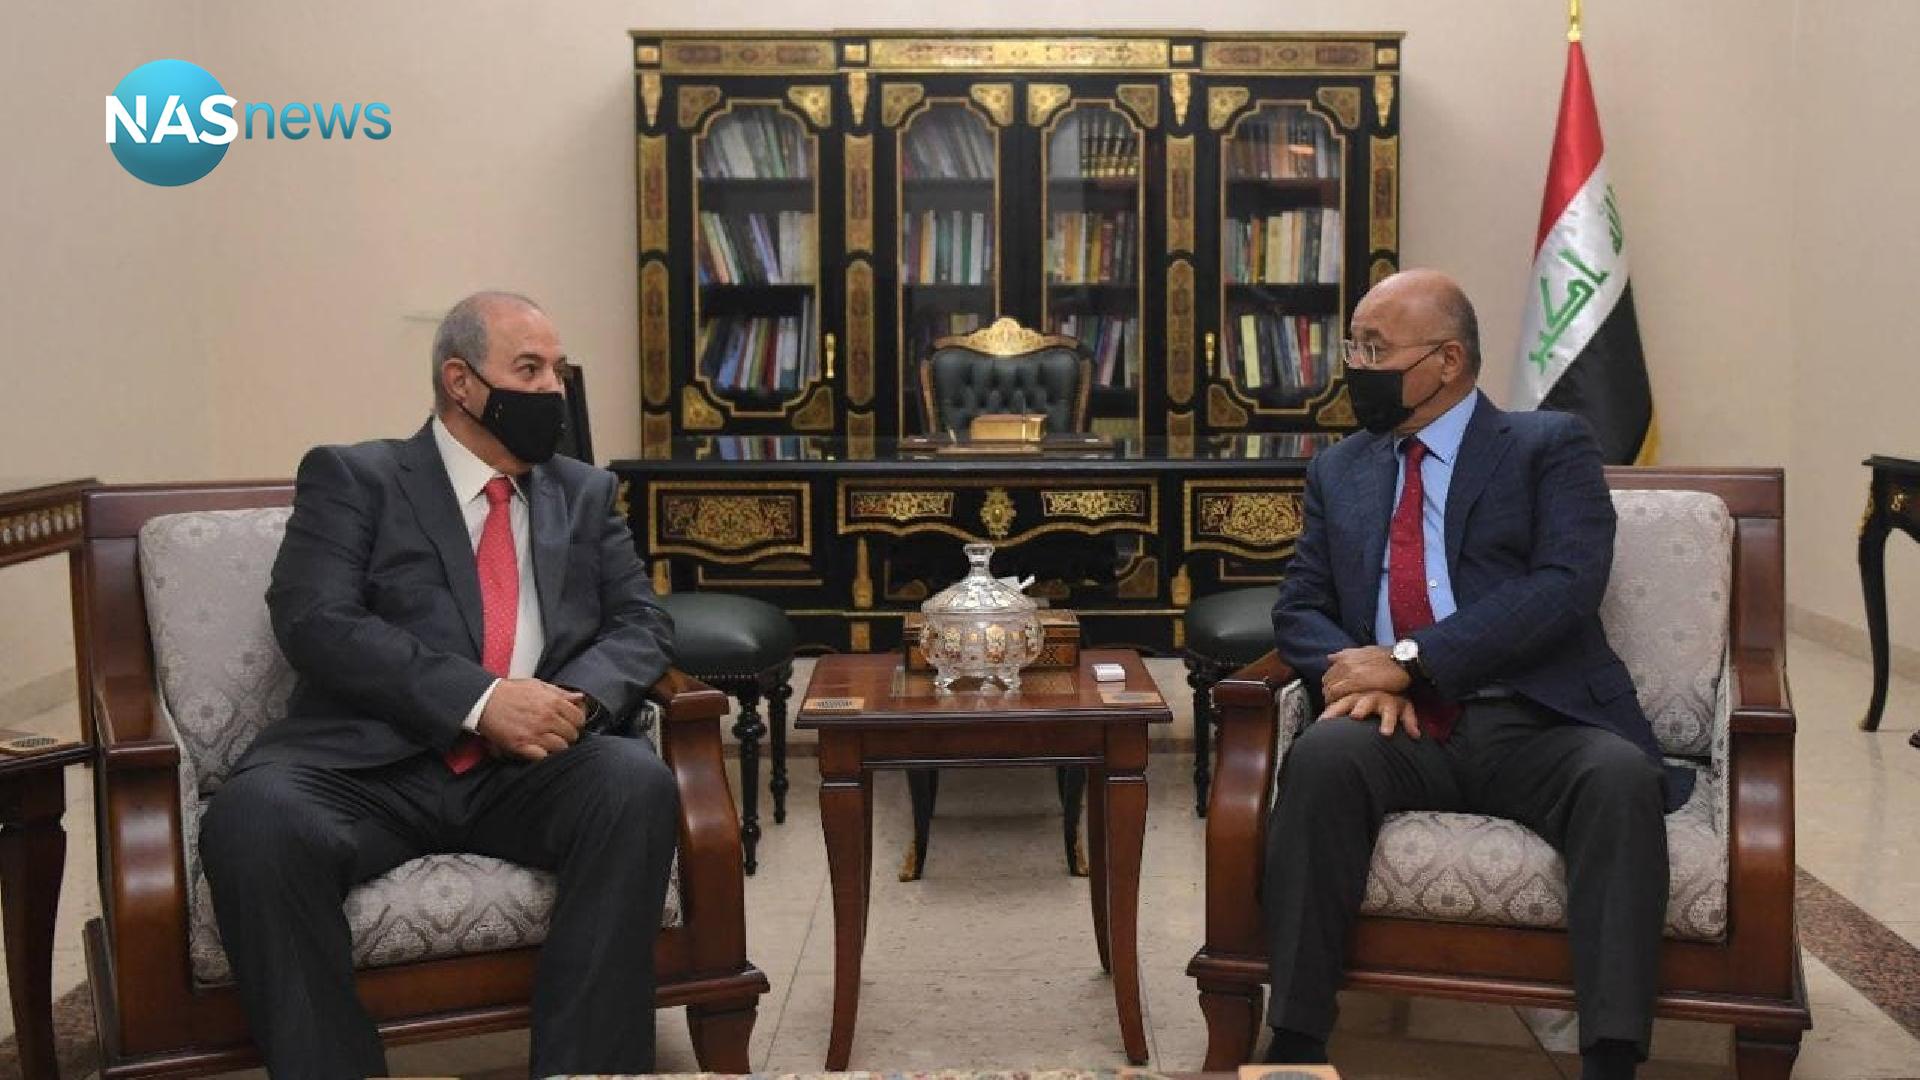 گفتگوی برهم صالح با ایاد علاوی درباره اوضاع سیاسی و انتخابات پارلمانی عراق